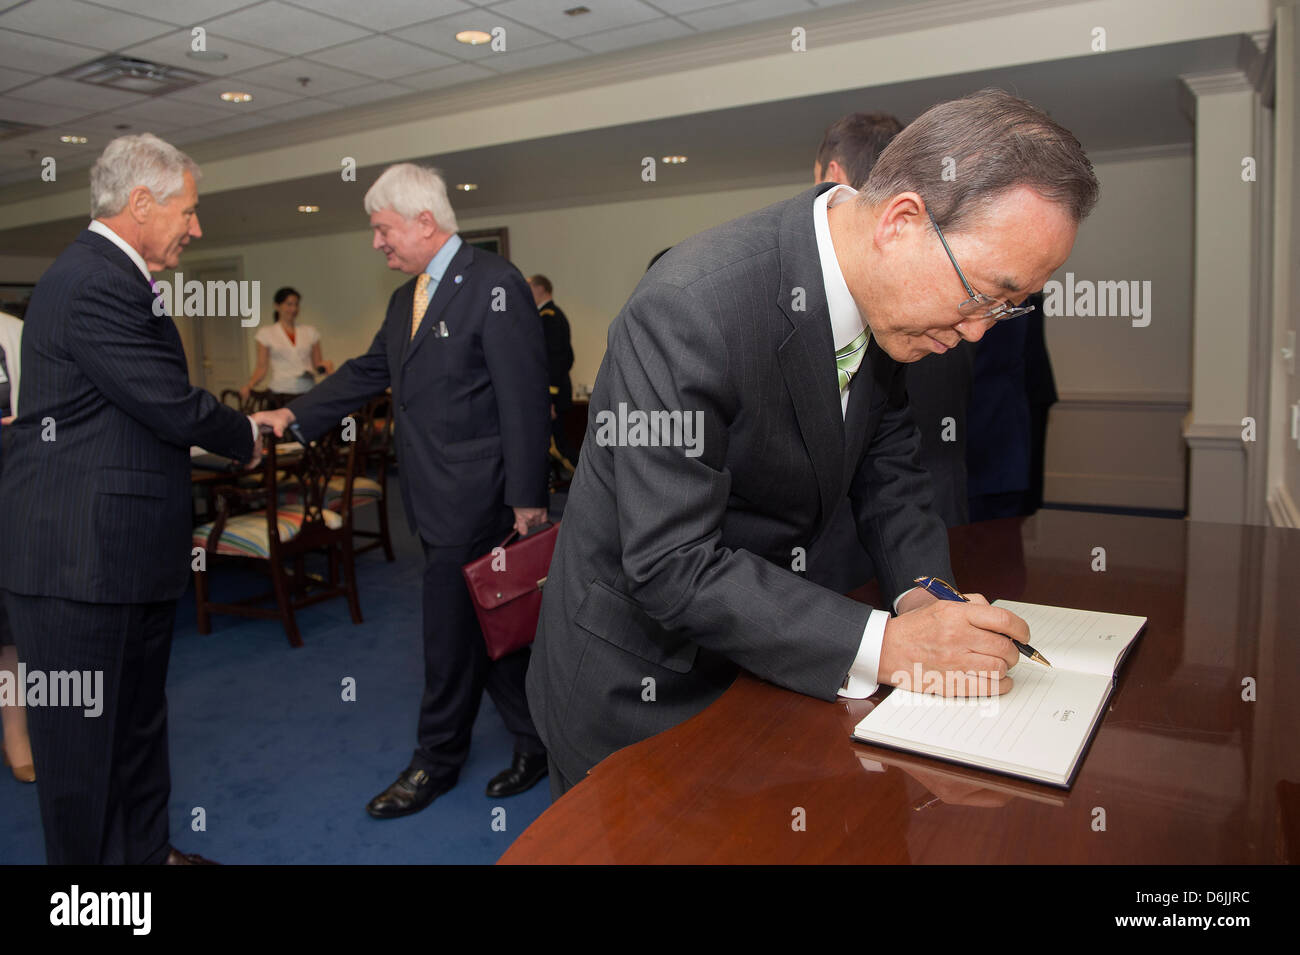 Secrétaire général de l'Organisation des Nations Unies, Ban Ki-moon, signe un livre d'avant sa rencontre avec le secrétaire américain à la défense Chuck Hagel au Pentagone le 18 avril 2013 à Arlington, VA. Banque D'Images